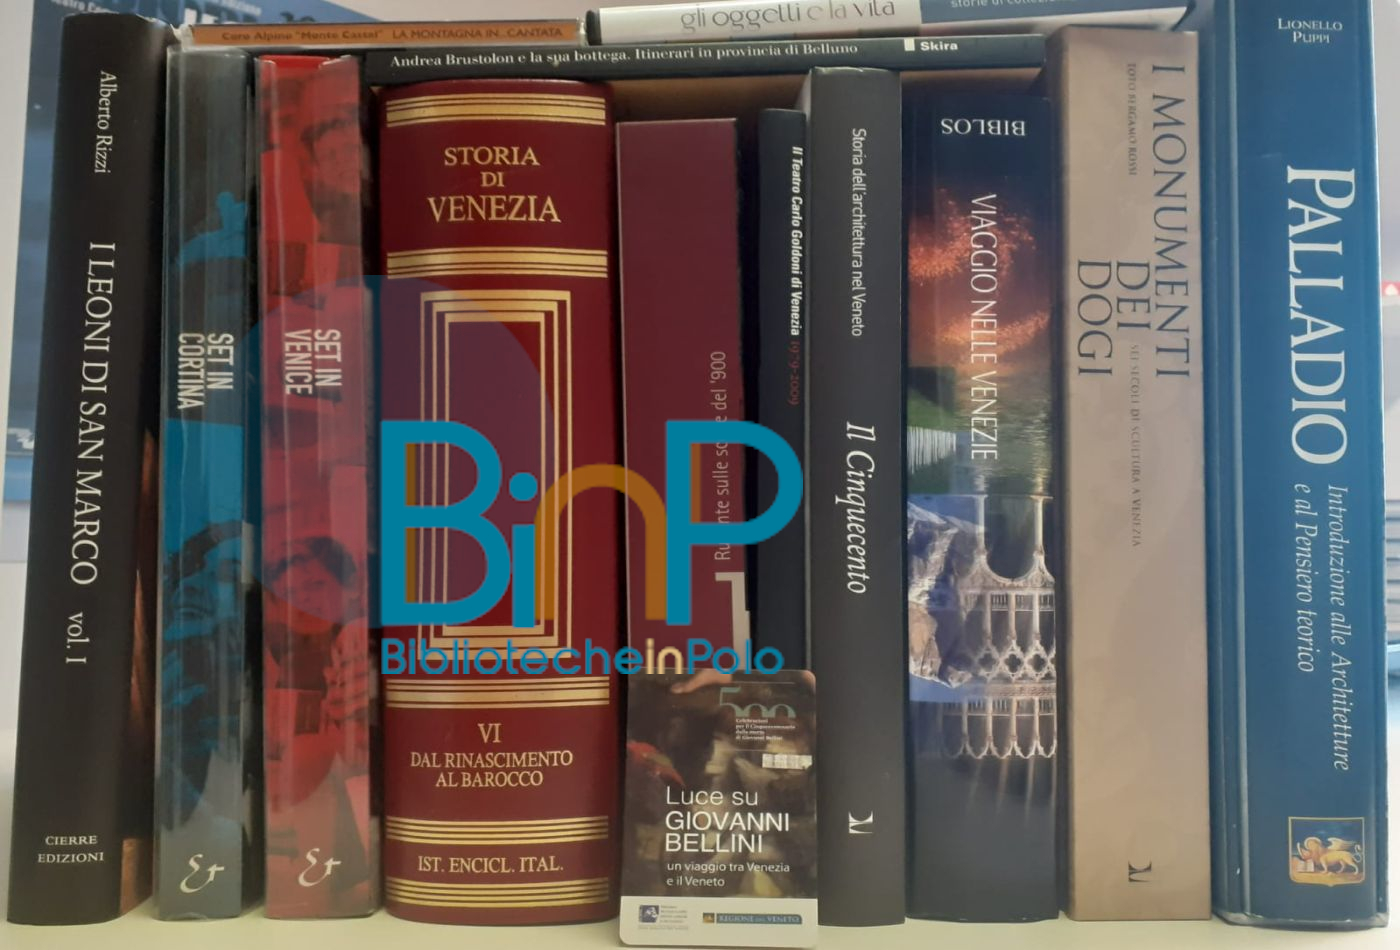 Sezione Beni culturali, Risorse bibliotecarie, immagine segnaposto con logo BINP - Biblioteche in Polo - sovrapposto al profilo di nove libri di colori e formati diversi, un cd e un dvd di storia e cultura veneta